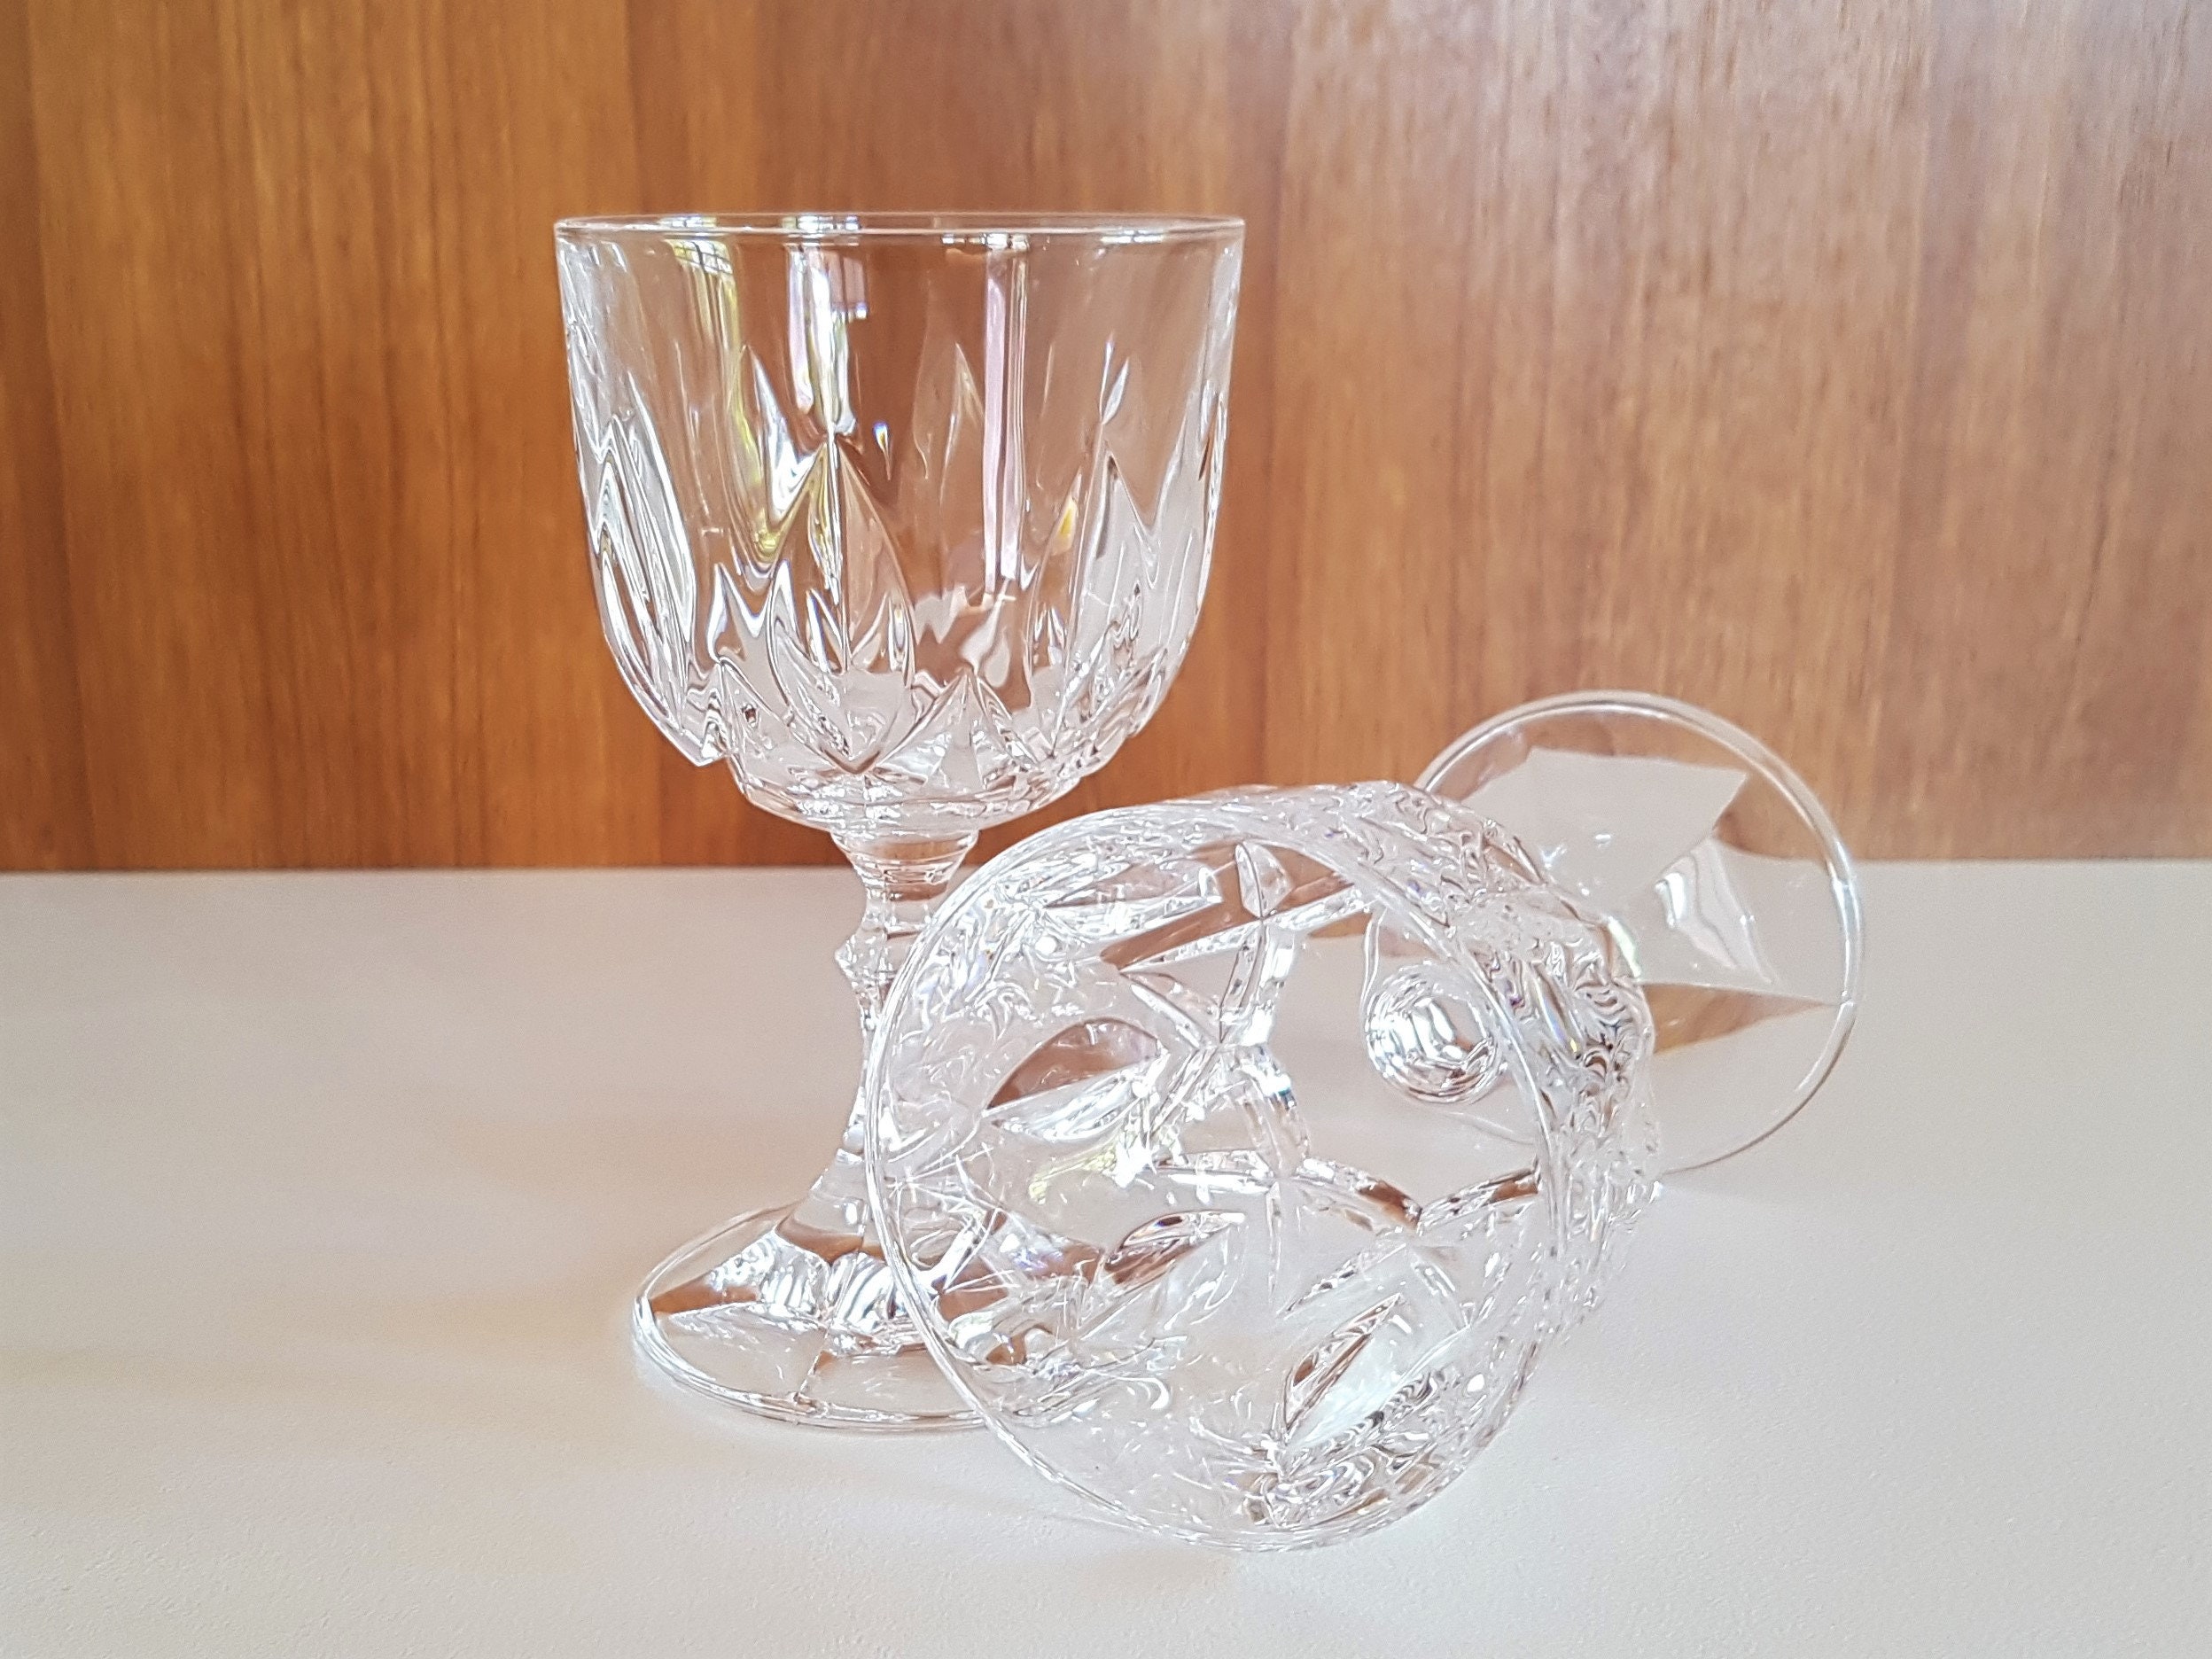 Vintage Set of 6 RCR Crystal Wine Glasses / RCR Ambassador Wine Glass / RCR  Crystal Glass Set / Royal Crystal Rock Glasses -  Denmark